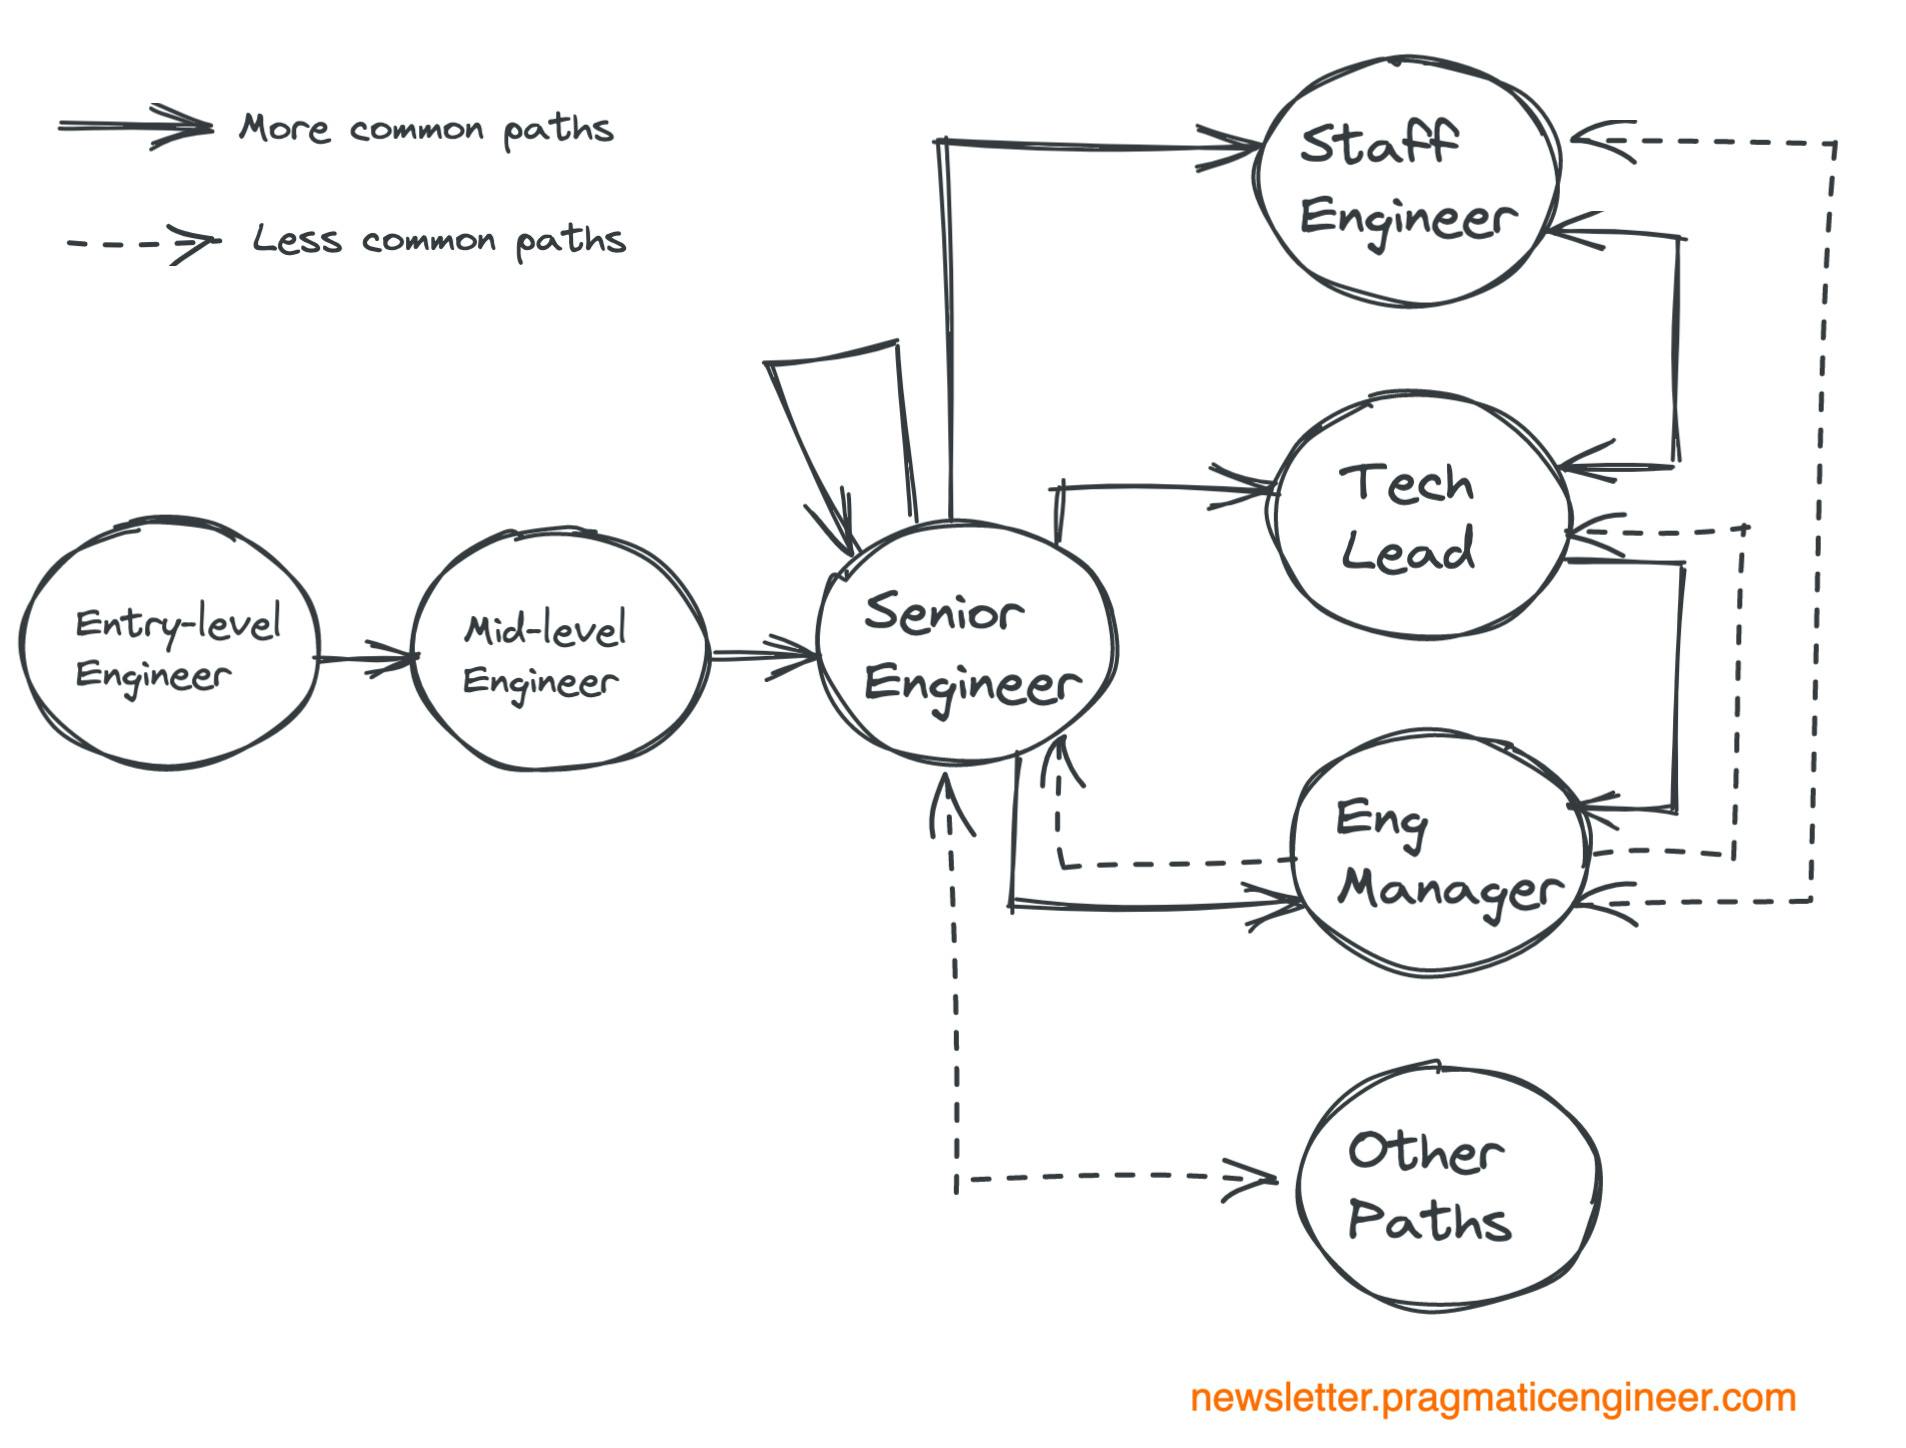 Engineering career paths as described in Pragmatic Engineer's recent blog.